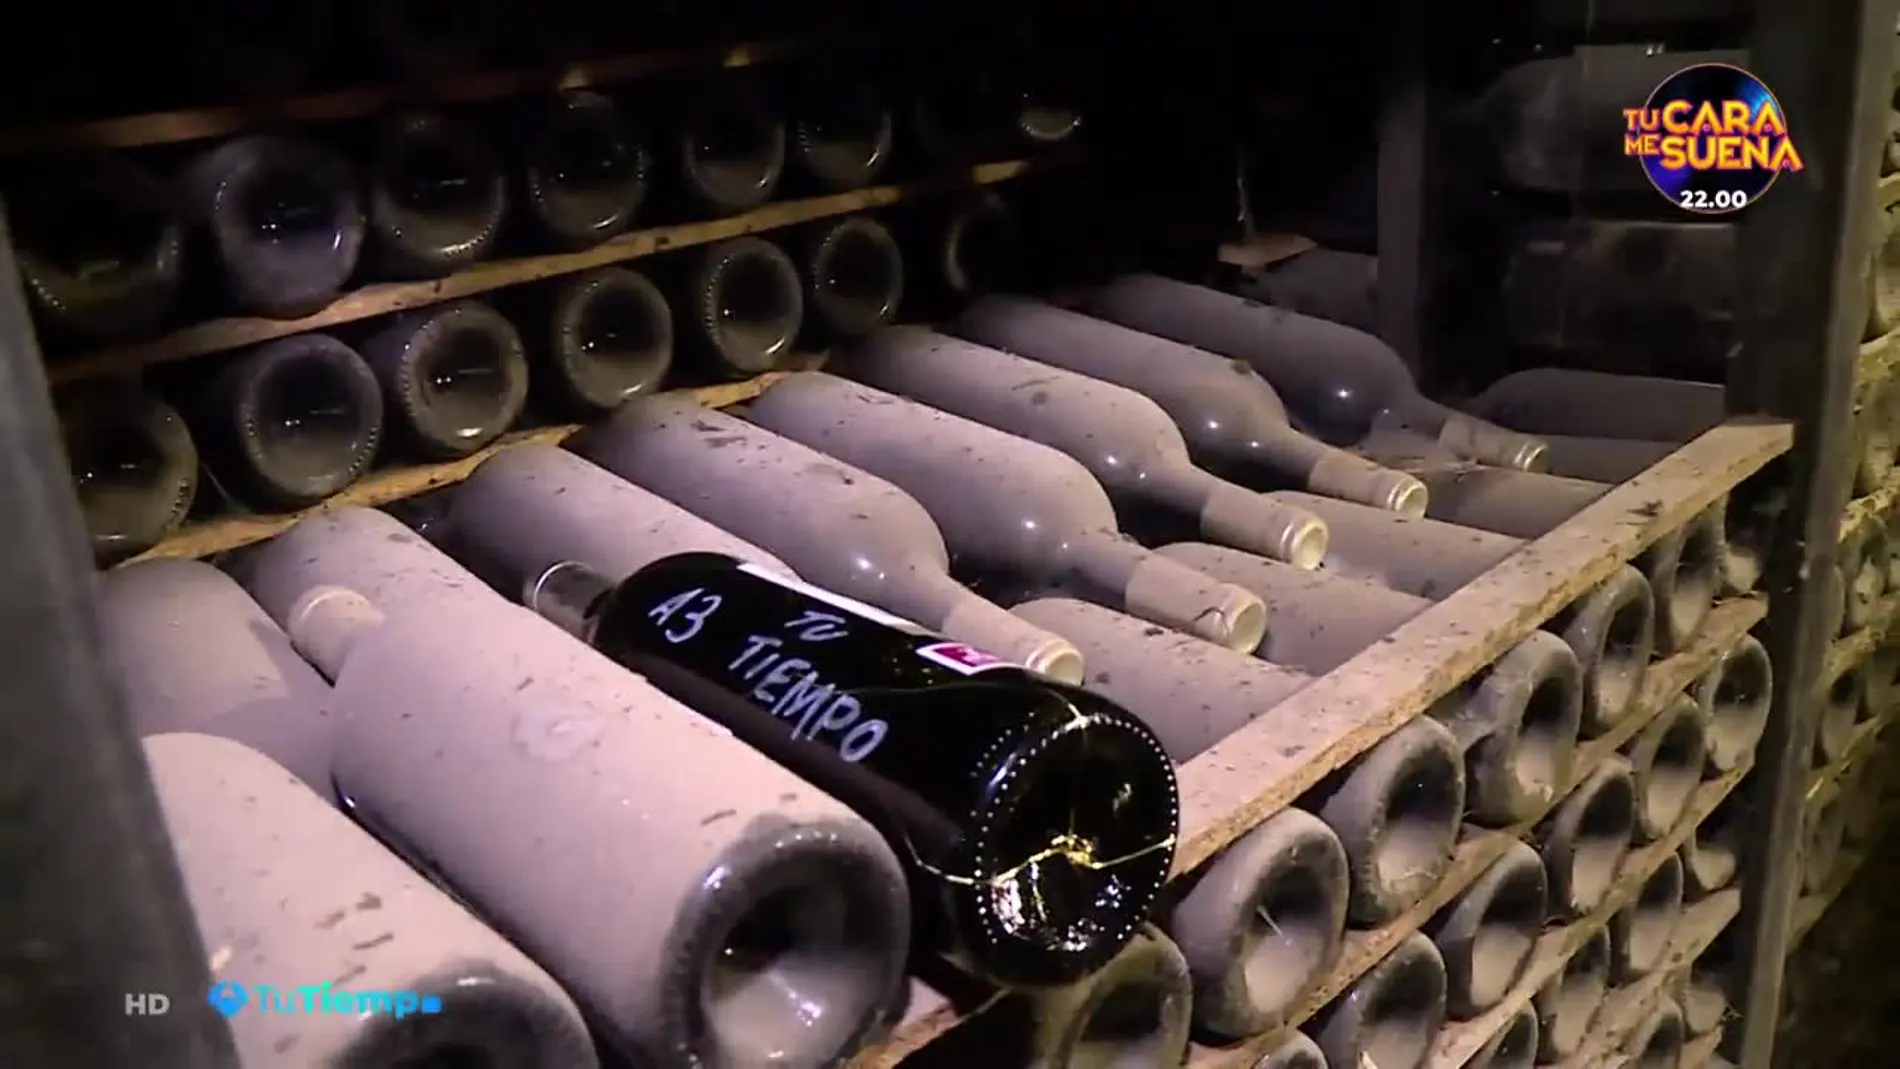 Los secretos de los vinos centenarios de las bodegas Marqués de Riscal